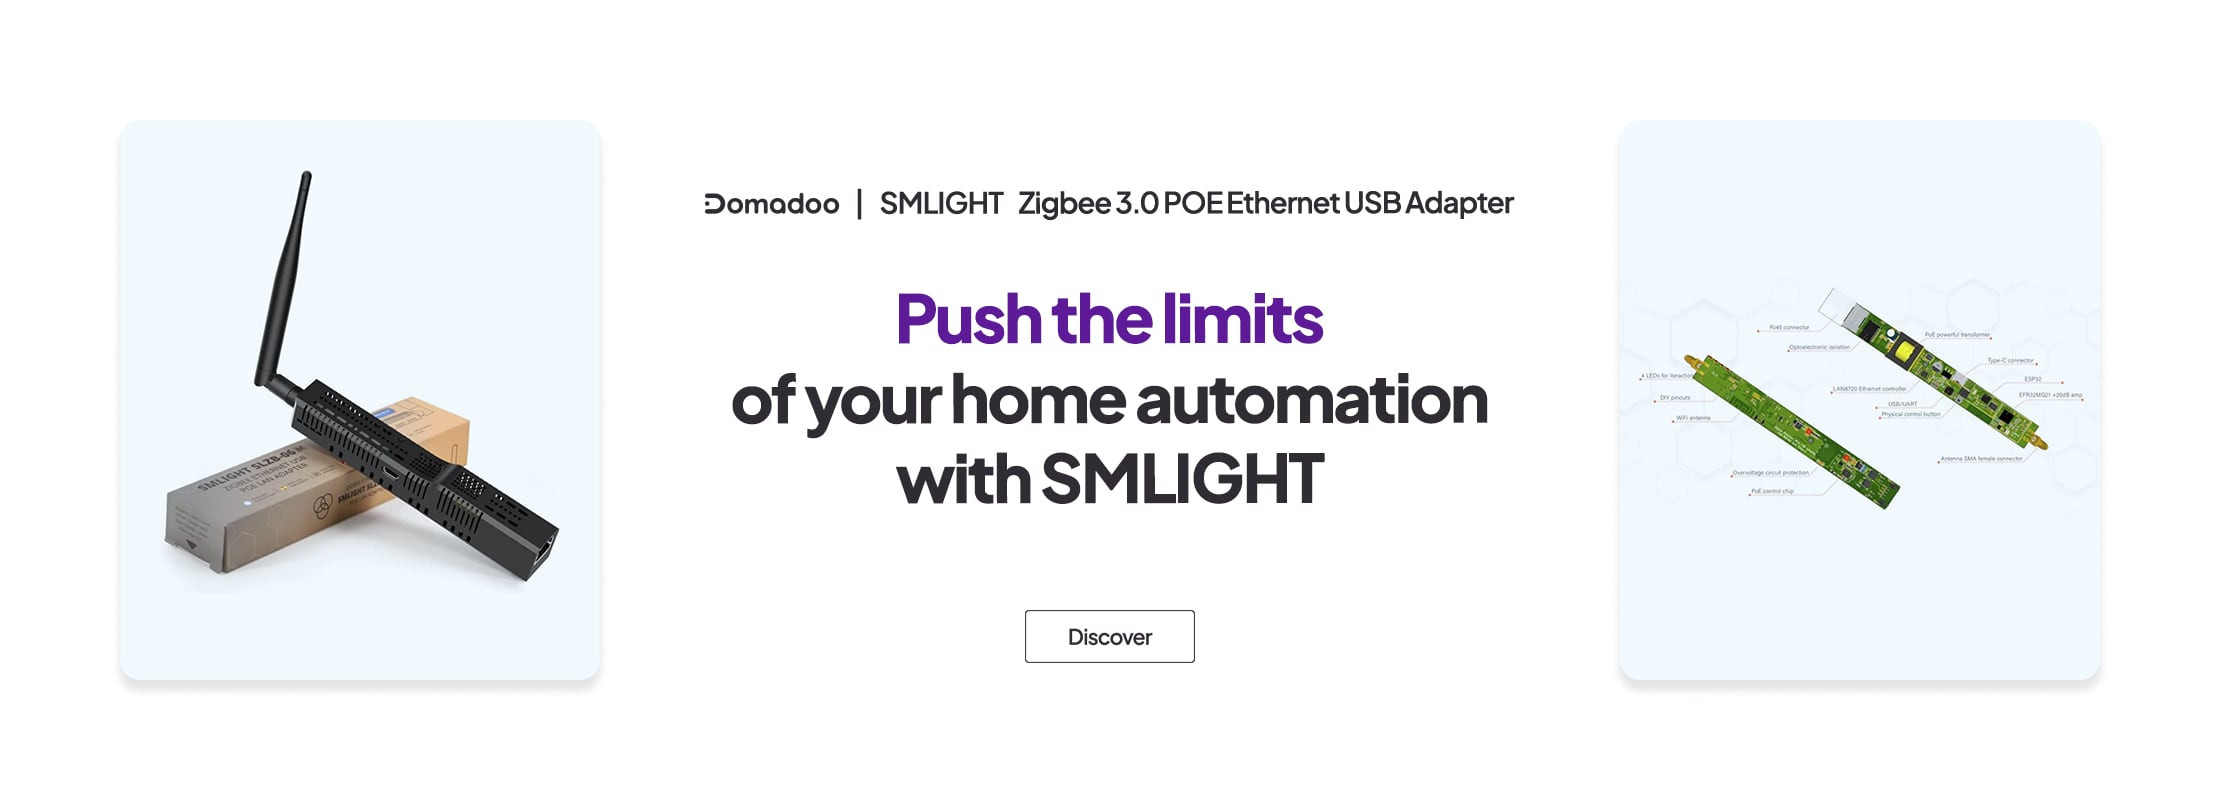 https://www.domadoo.fr/de/smart-home-box/7043-smlight-zigbee-30-poe-ethernet-usb-adapter-efr32mg21-zigbee2mqtt-und-zha.html